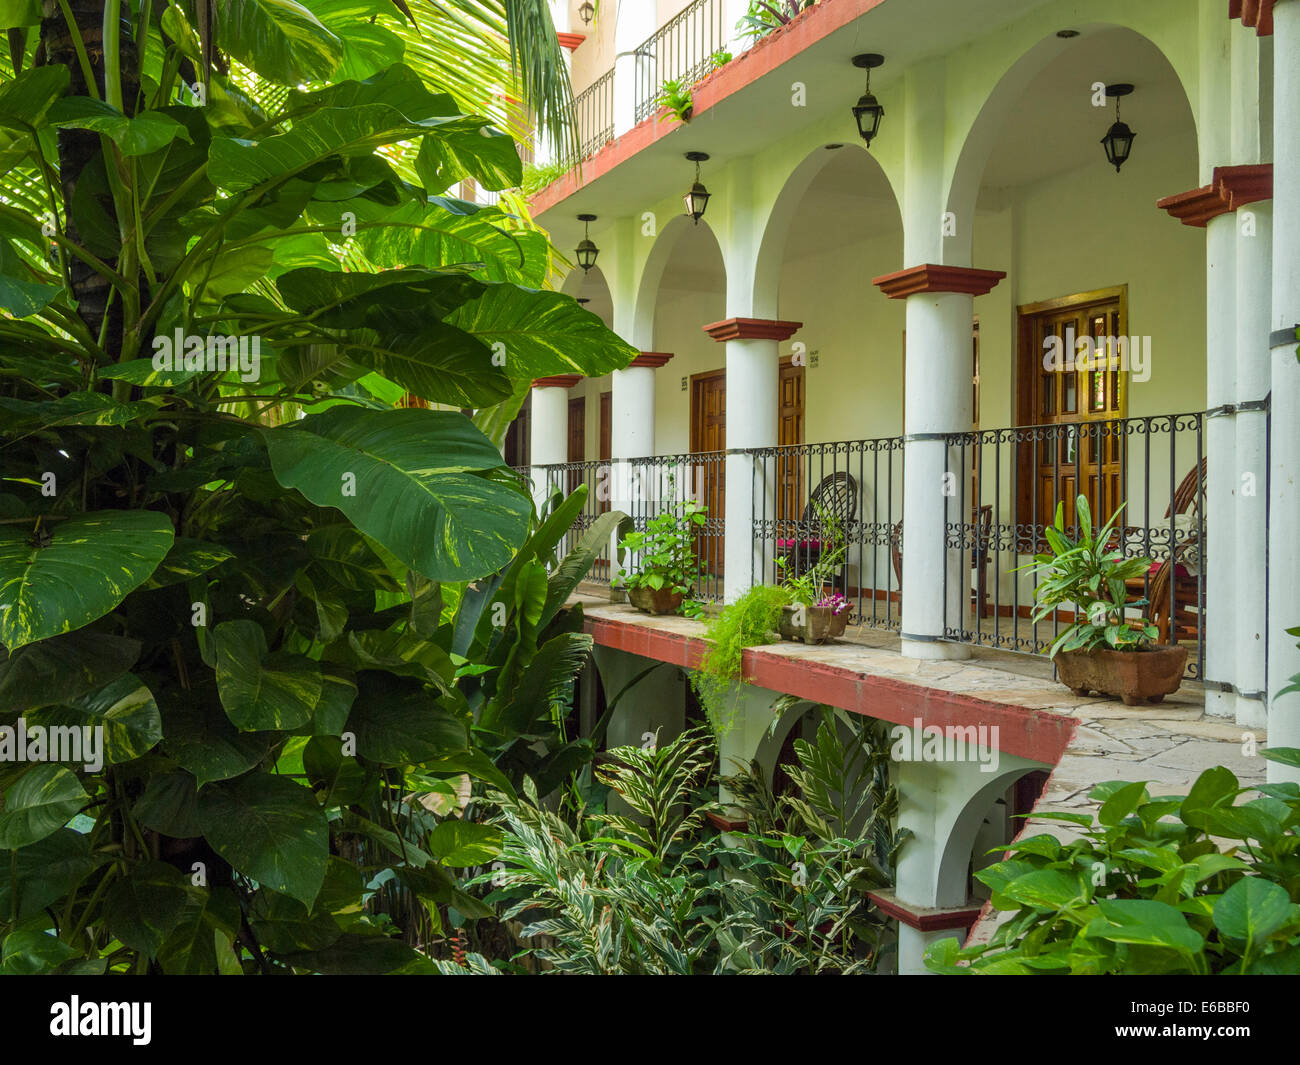 Mexiko, Chiapas, Chiapa de Corzo. Dschungel-wie Laub im Garten im Innenhof am Hotel La Ceiba. Stockfoto